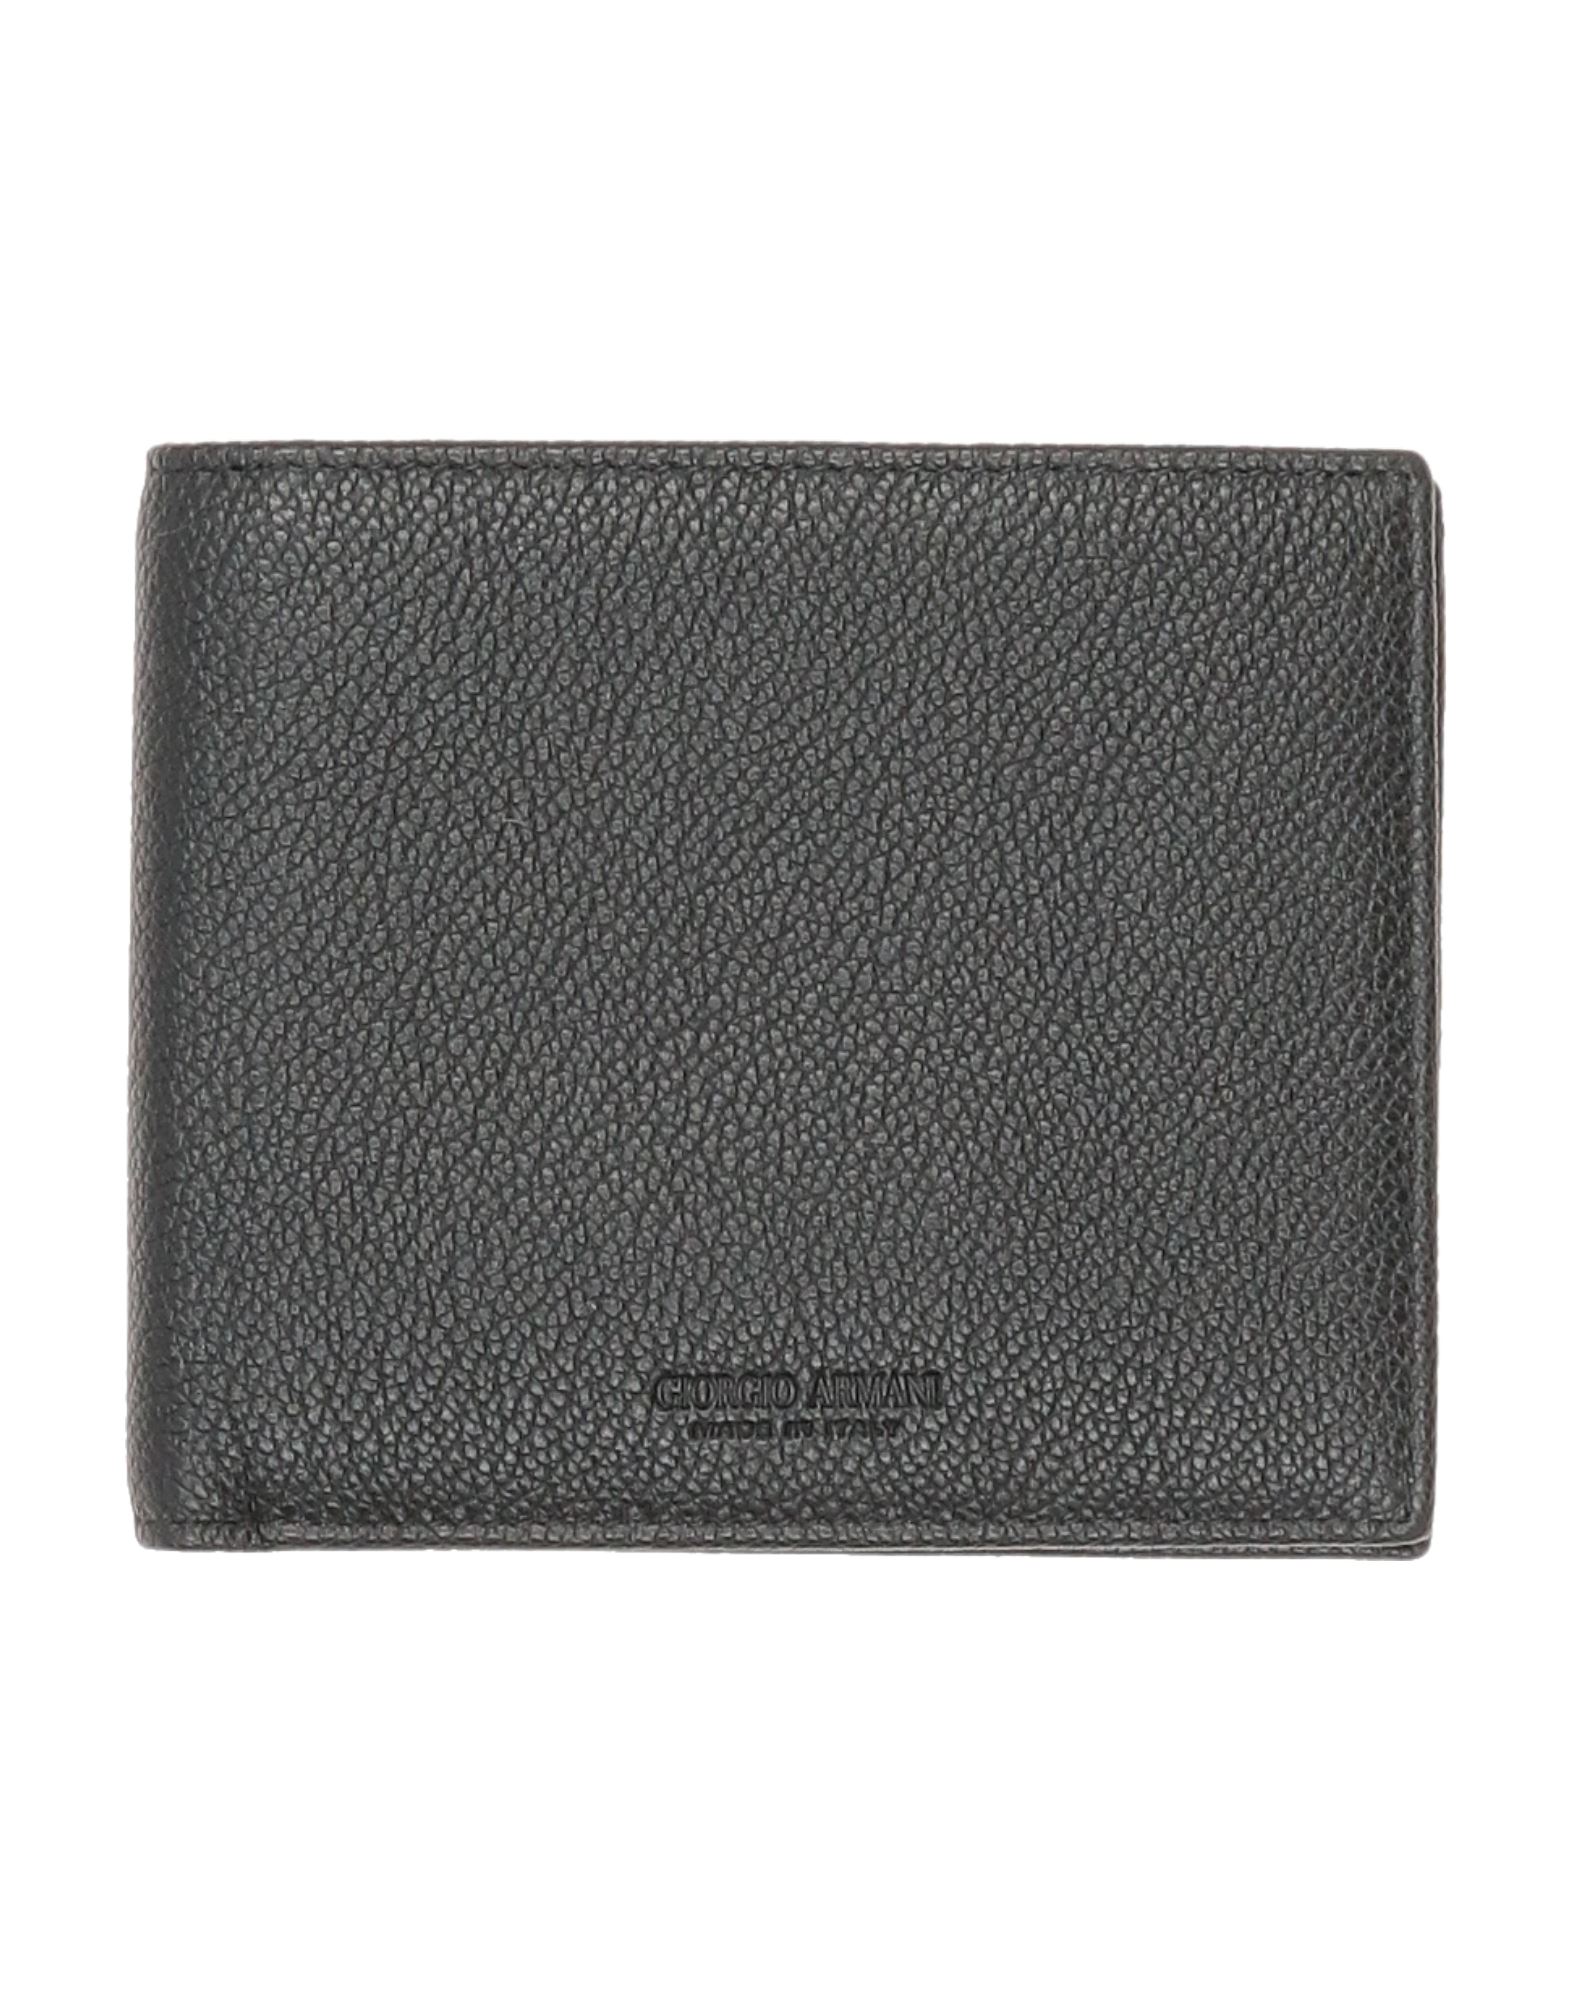 Giorgio Armani Wallets In Black